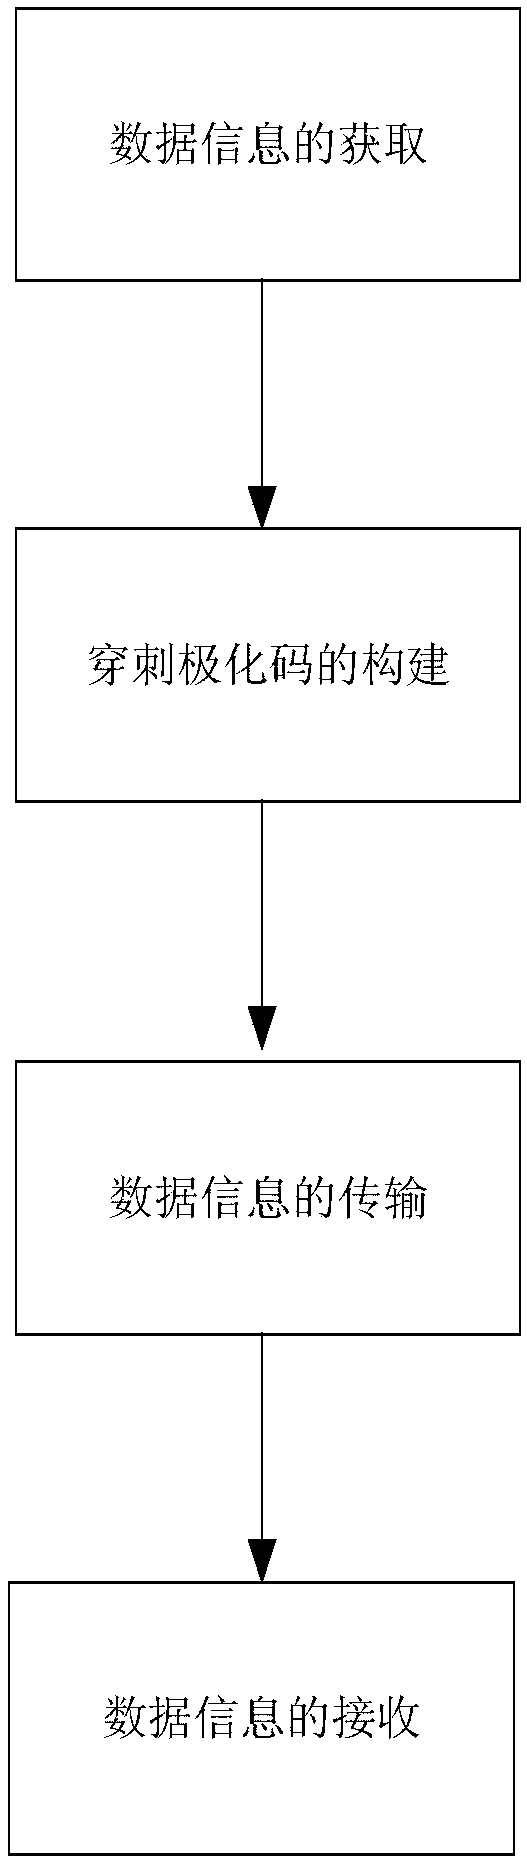 Information communication method based on puncture polarization code